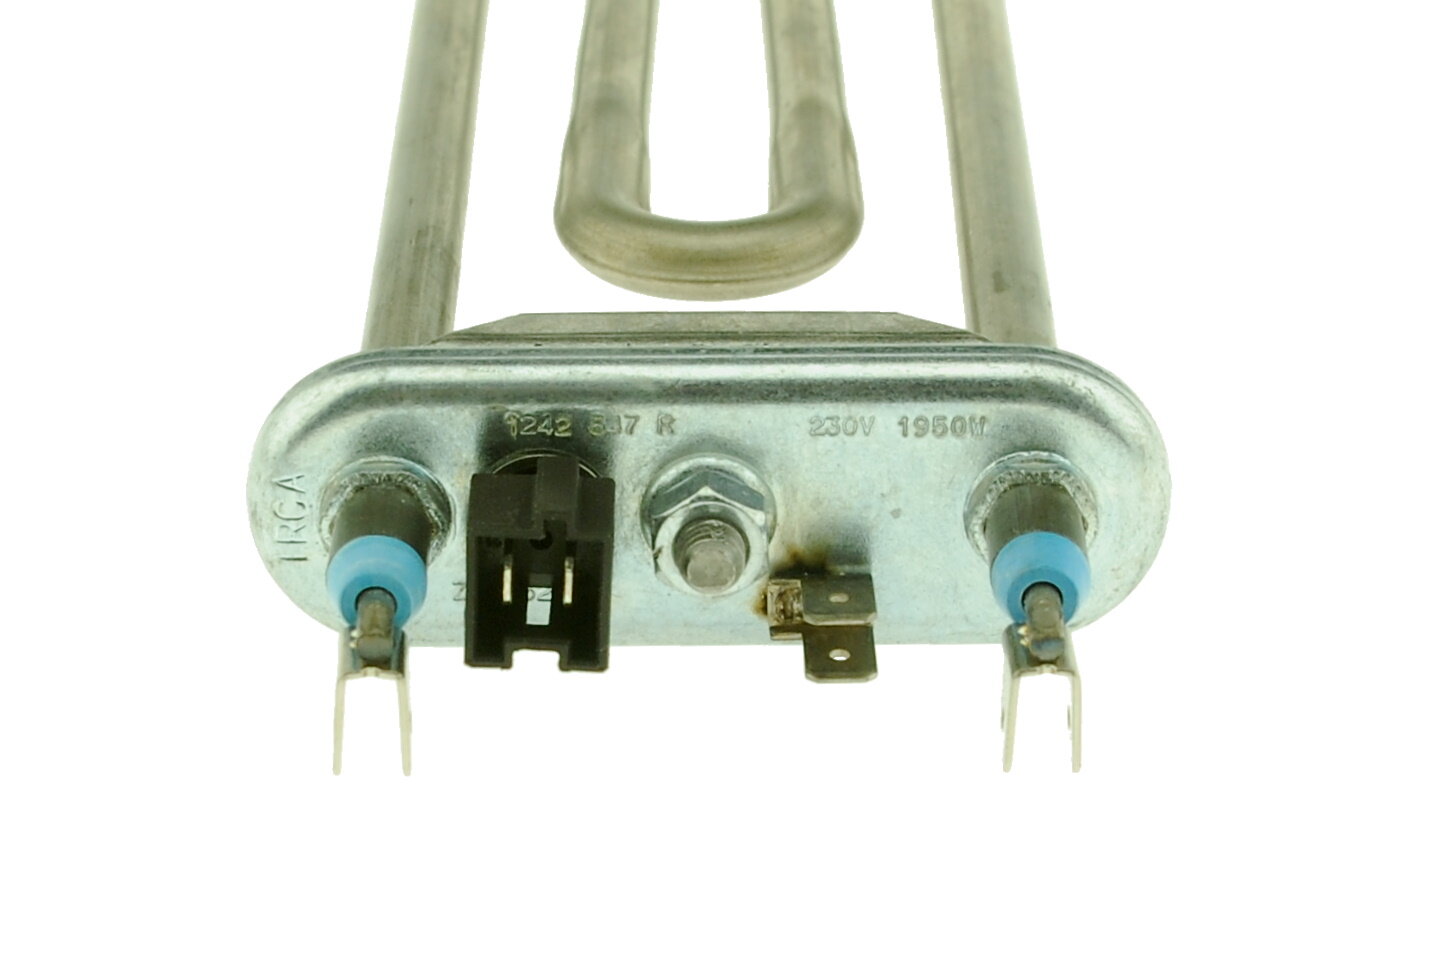 ТЭН (нагреватель) L=235 мм, 1950W, прямой с датчиком стиральной машины Bosch, Siemens, Electrolux